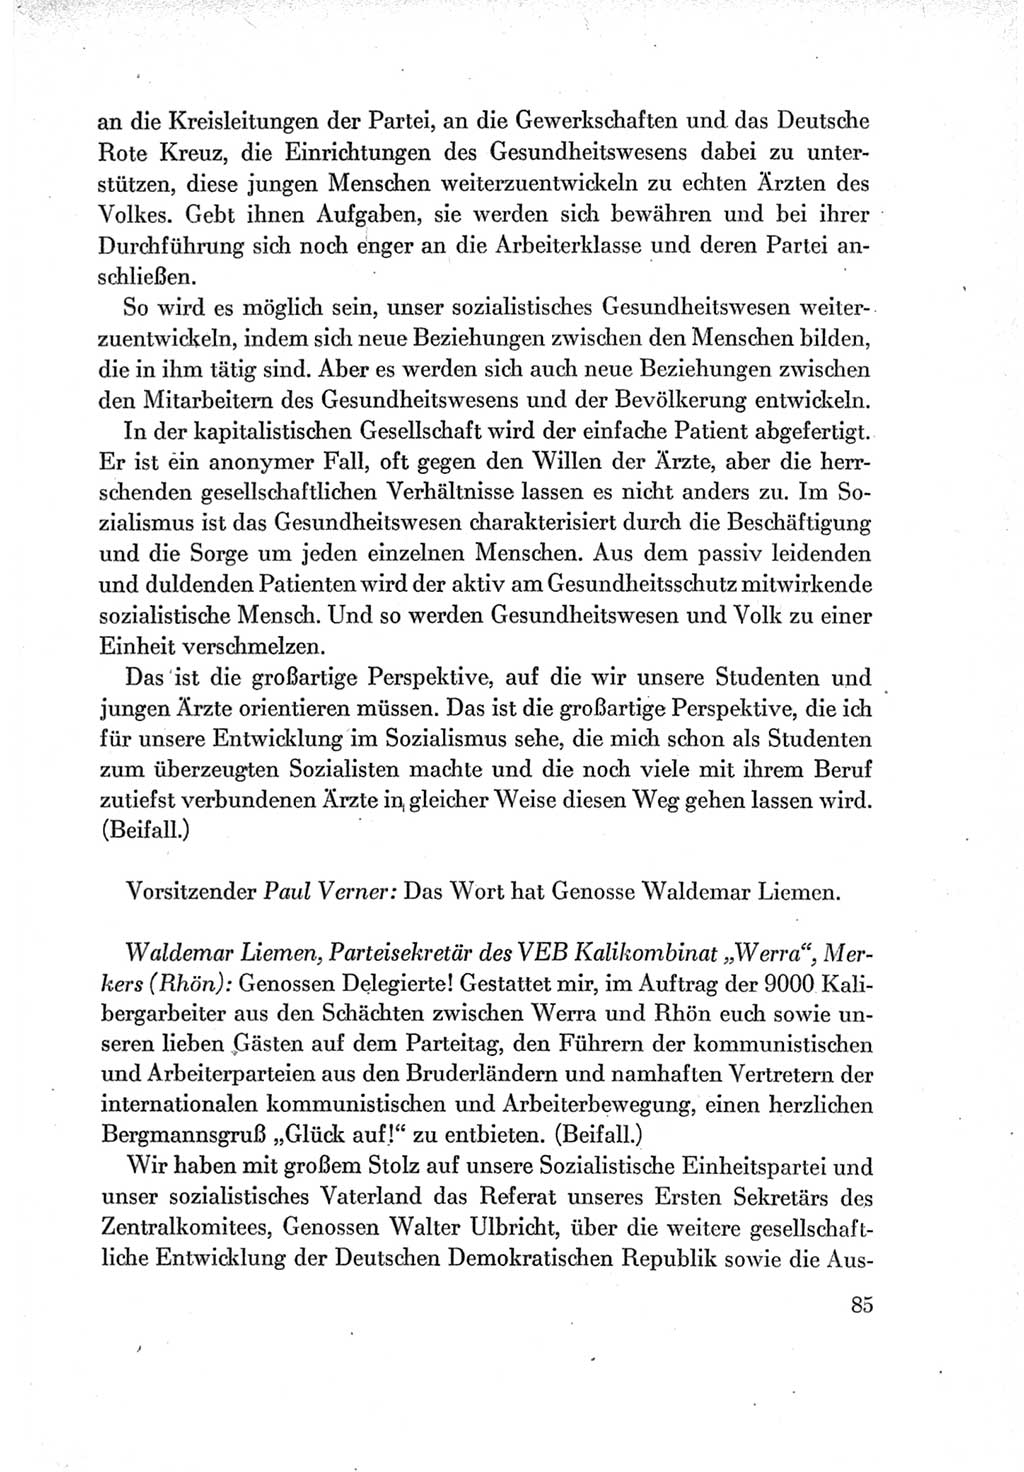 Protokoll der Verhandlungen des Ⅶ. Parteitages der Sozialistischen Einheitspartei Deutschlands (SED) [Deutsche Demokratische Republik (DDR)] 1967, Band Ⅱ, Seite 85 (Prot. Verh. Ⅶ. PT SED DDR 1967, Bd. Ⅱ, S. 85)